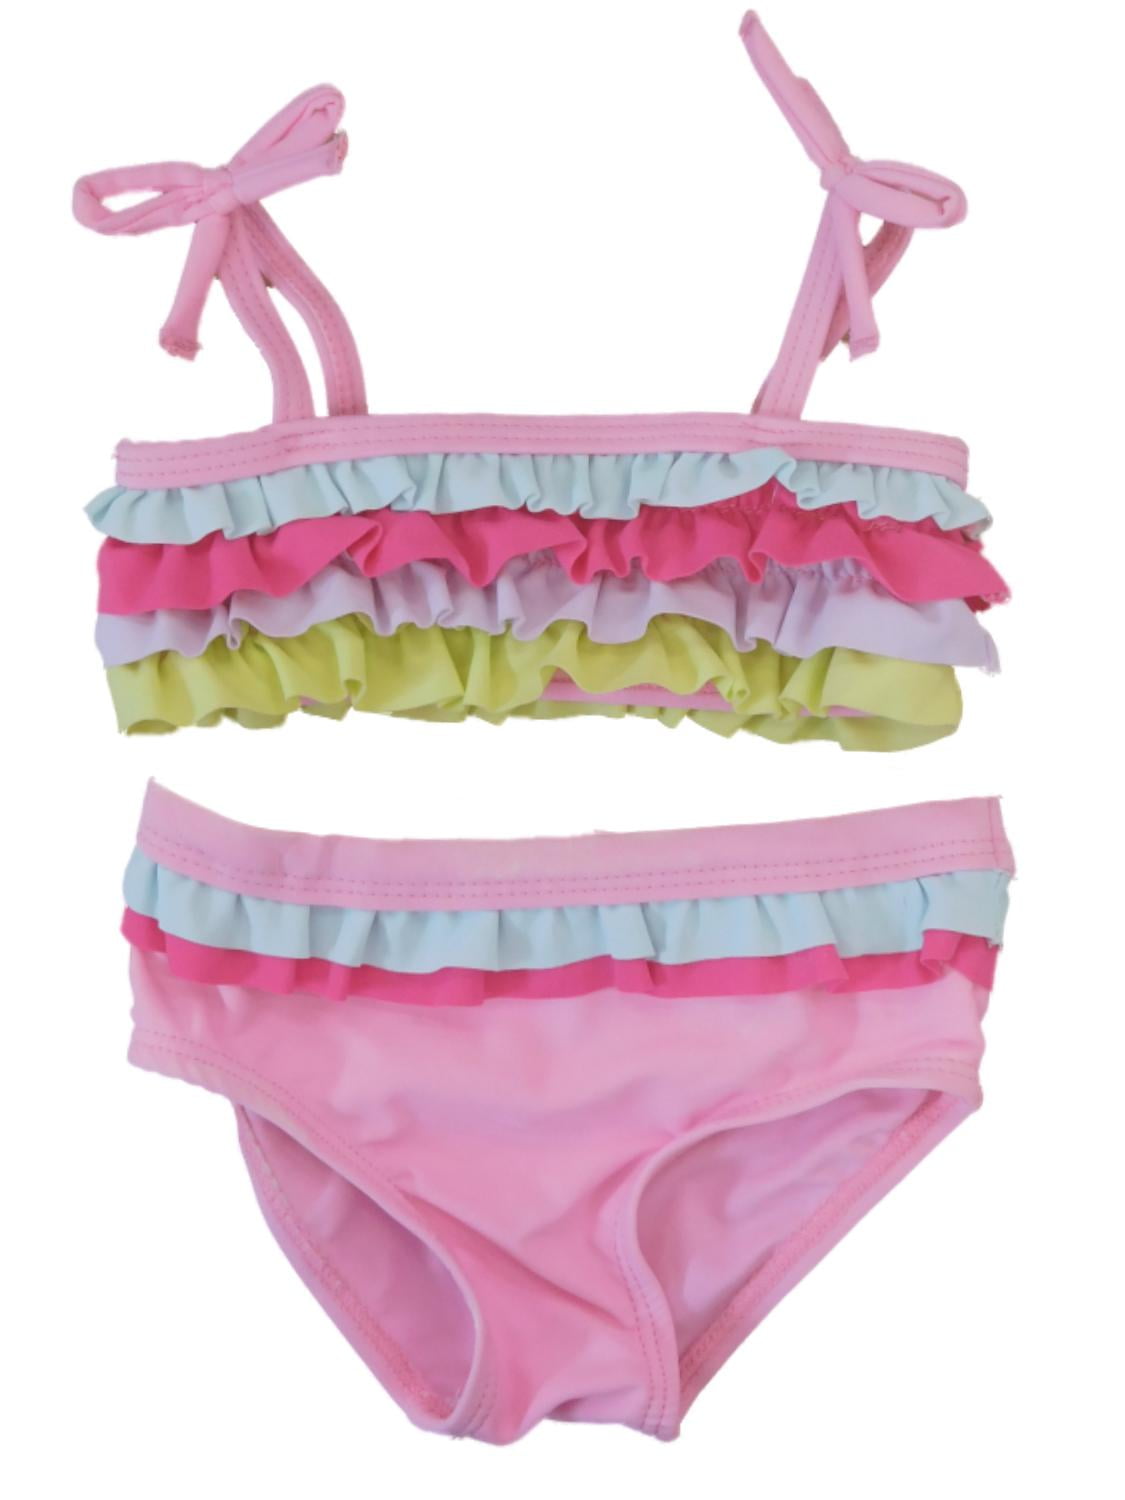 Koala - Infant Girls Pink Striped Ruffled 2 Piece Bikini Swimming ...